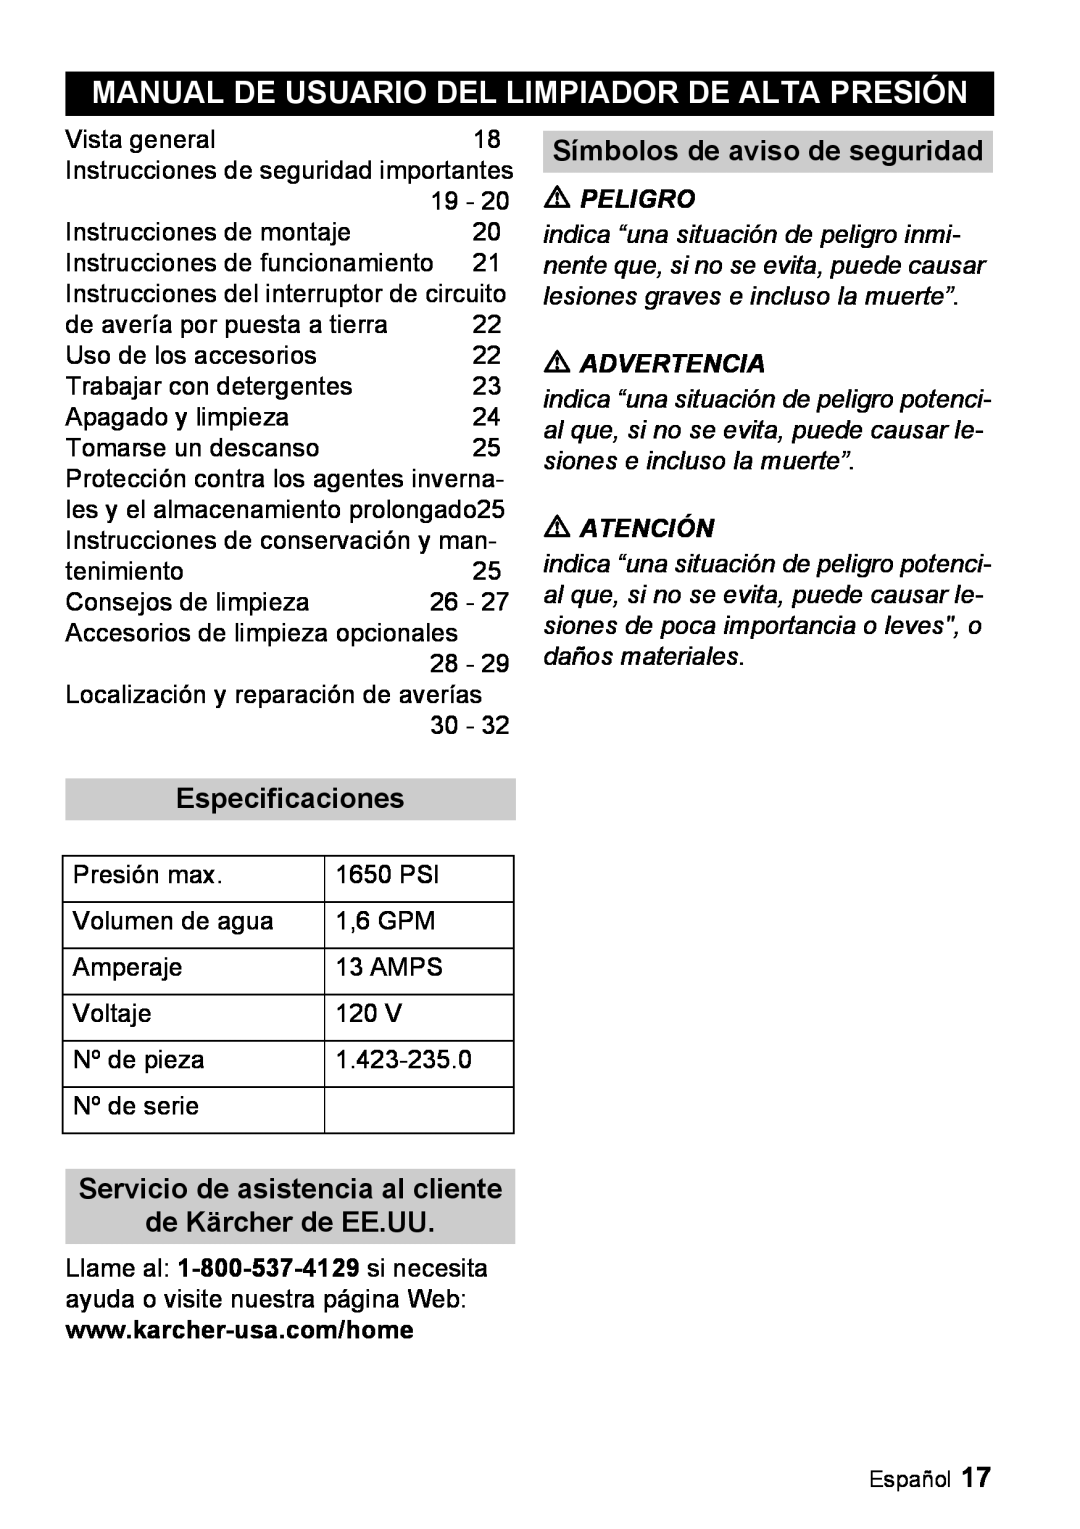 Karcher K 3.99M manual Manual De Usuario Del Limpiador De Alta Presión, Símbolos de aviso de seguridad, Especificaciones 